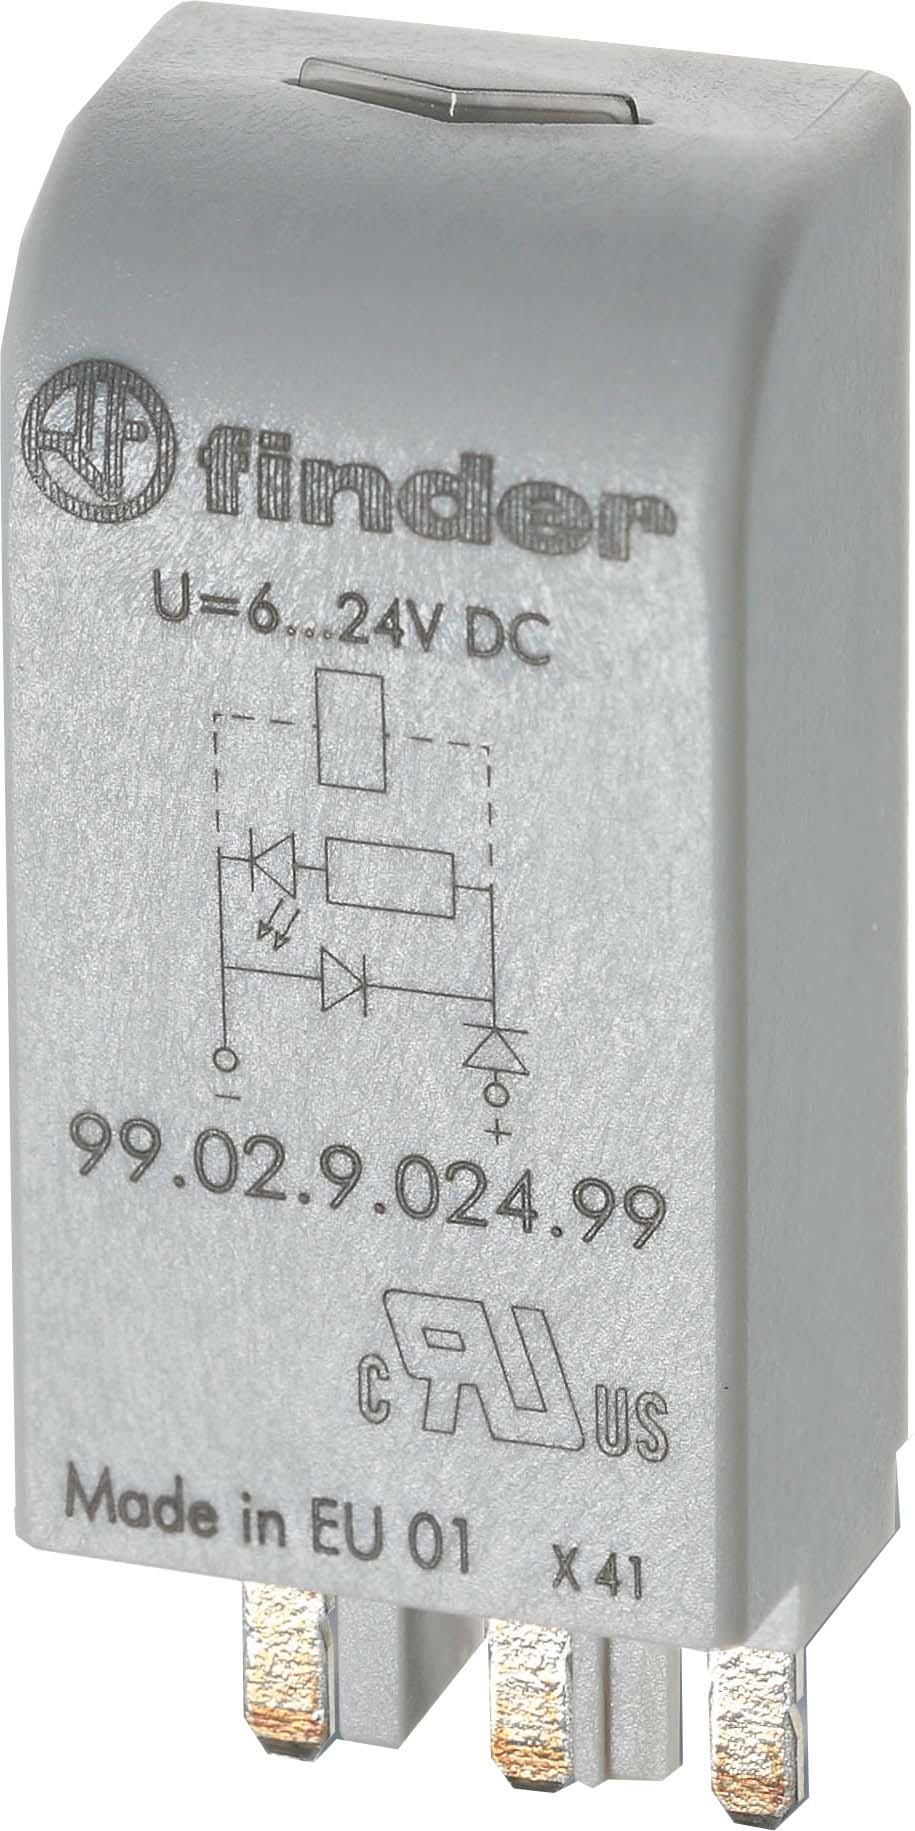 Finder LED gn + Diode 6.. 24VDC f.Fas. 95.03/05 99.02.9.024.99